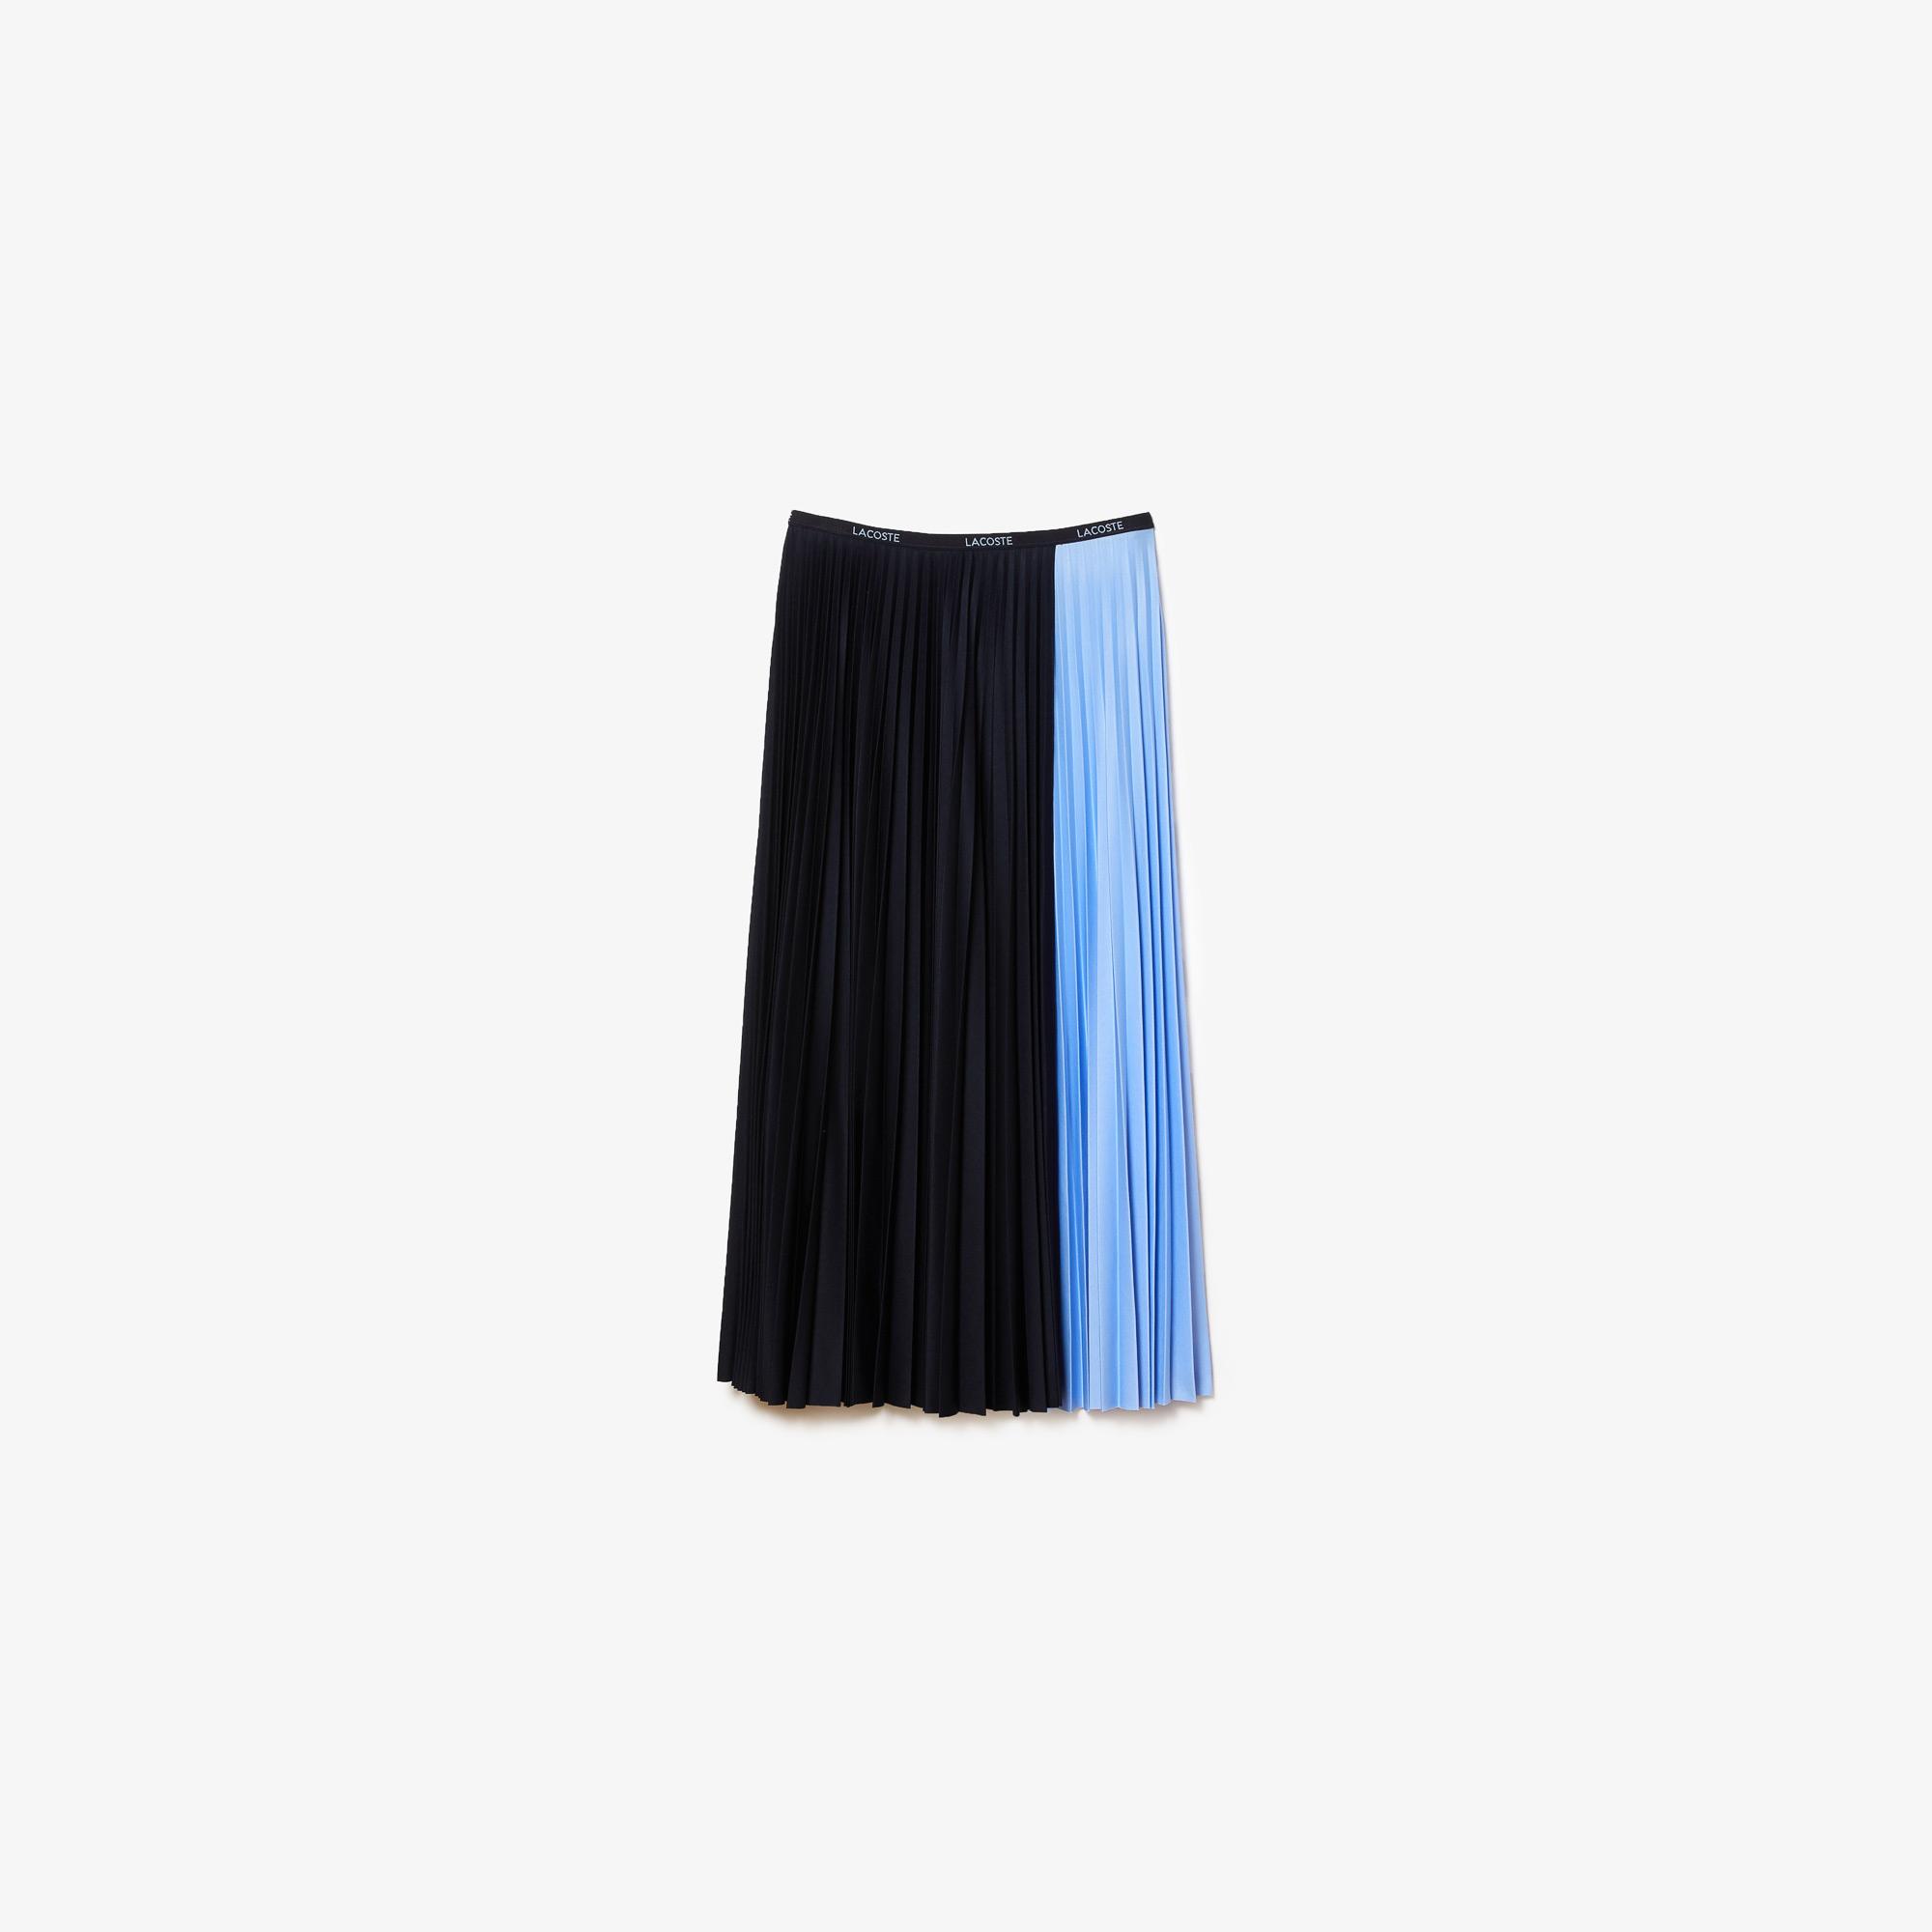 Lacoste Damska plisowana spódnica midi w bloki kolorystyczne